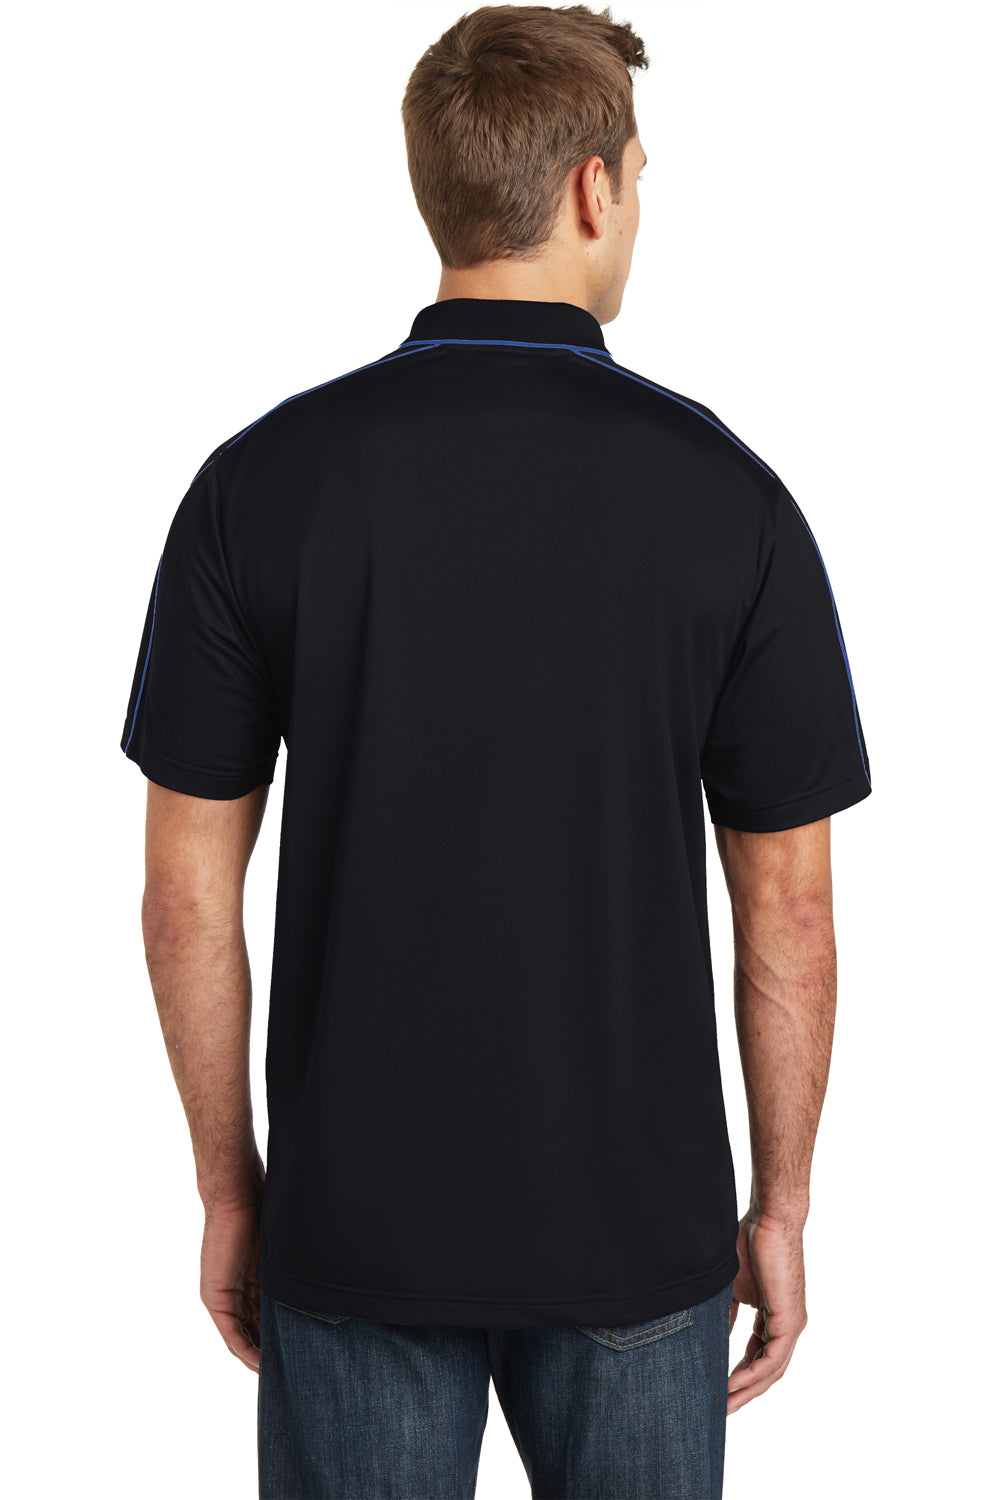 Sport-Tek ST653 Mens Sport-Wick Moisture Wicking Short Sleeve Polo Shirt Black/Royal Blue Back